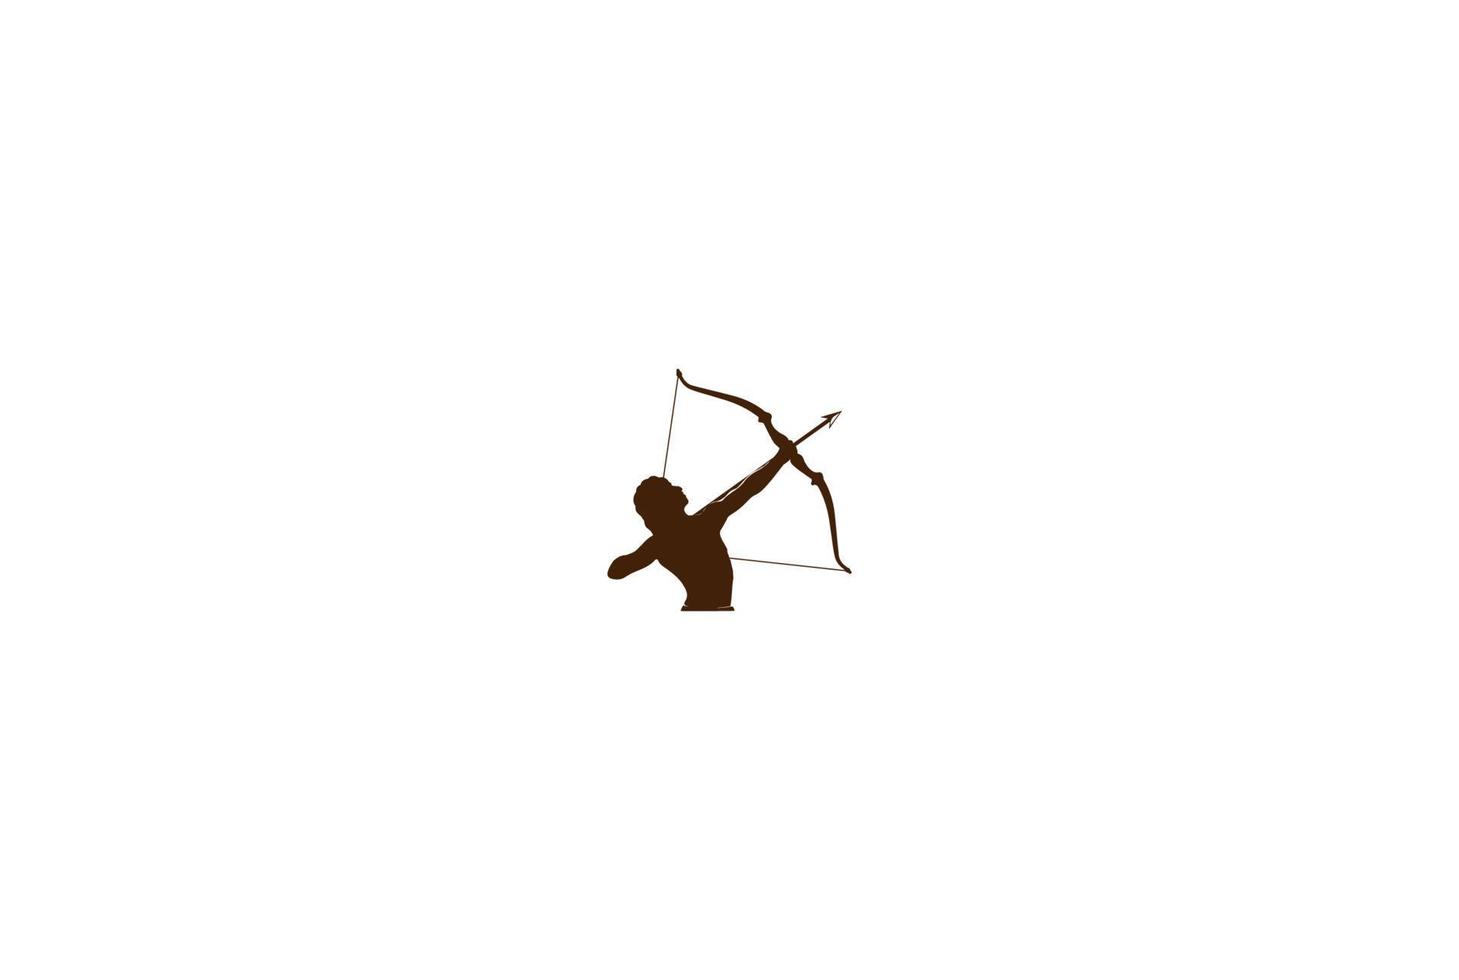 uomo maschio ercole eracle arco arco lungo freccia mito muscolare arciere greco guerriero sagoma logo disegno vettoriale